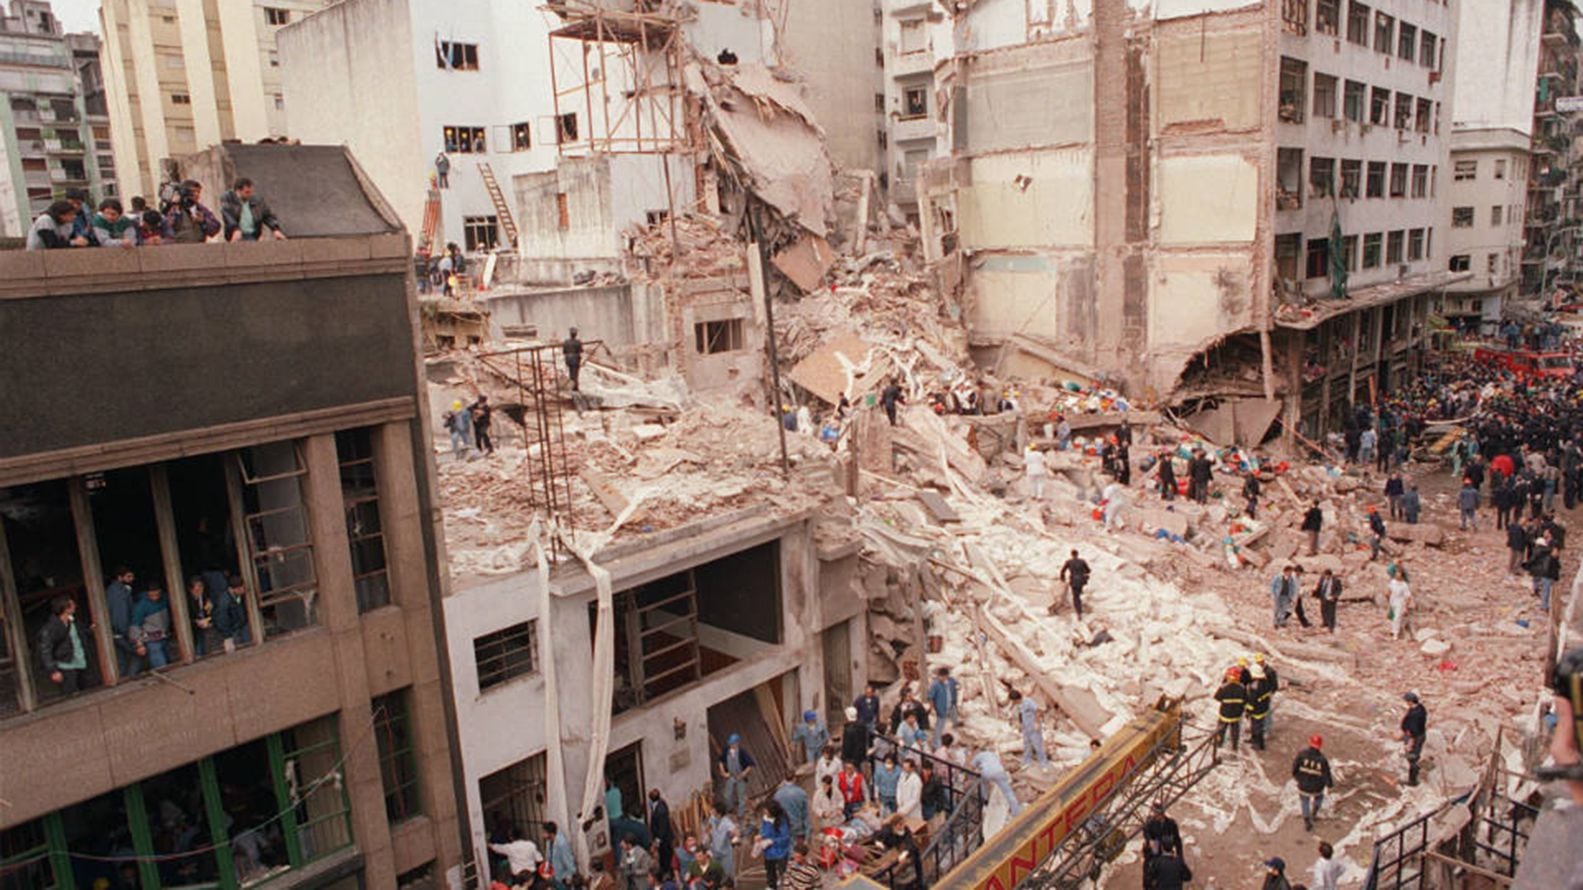 Los escombros de la AMIA (Asociacion de Mutuales Israelitas Argentinas) tras el atentado en Buenos Aires del 18 de julio de 1994 (archivo)